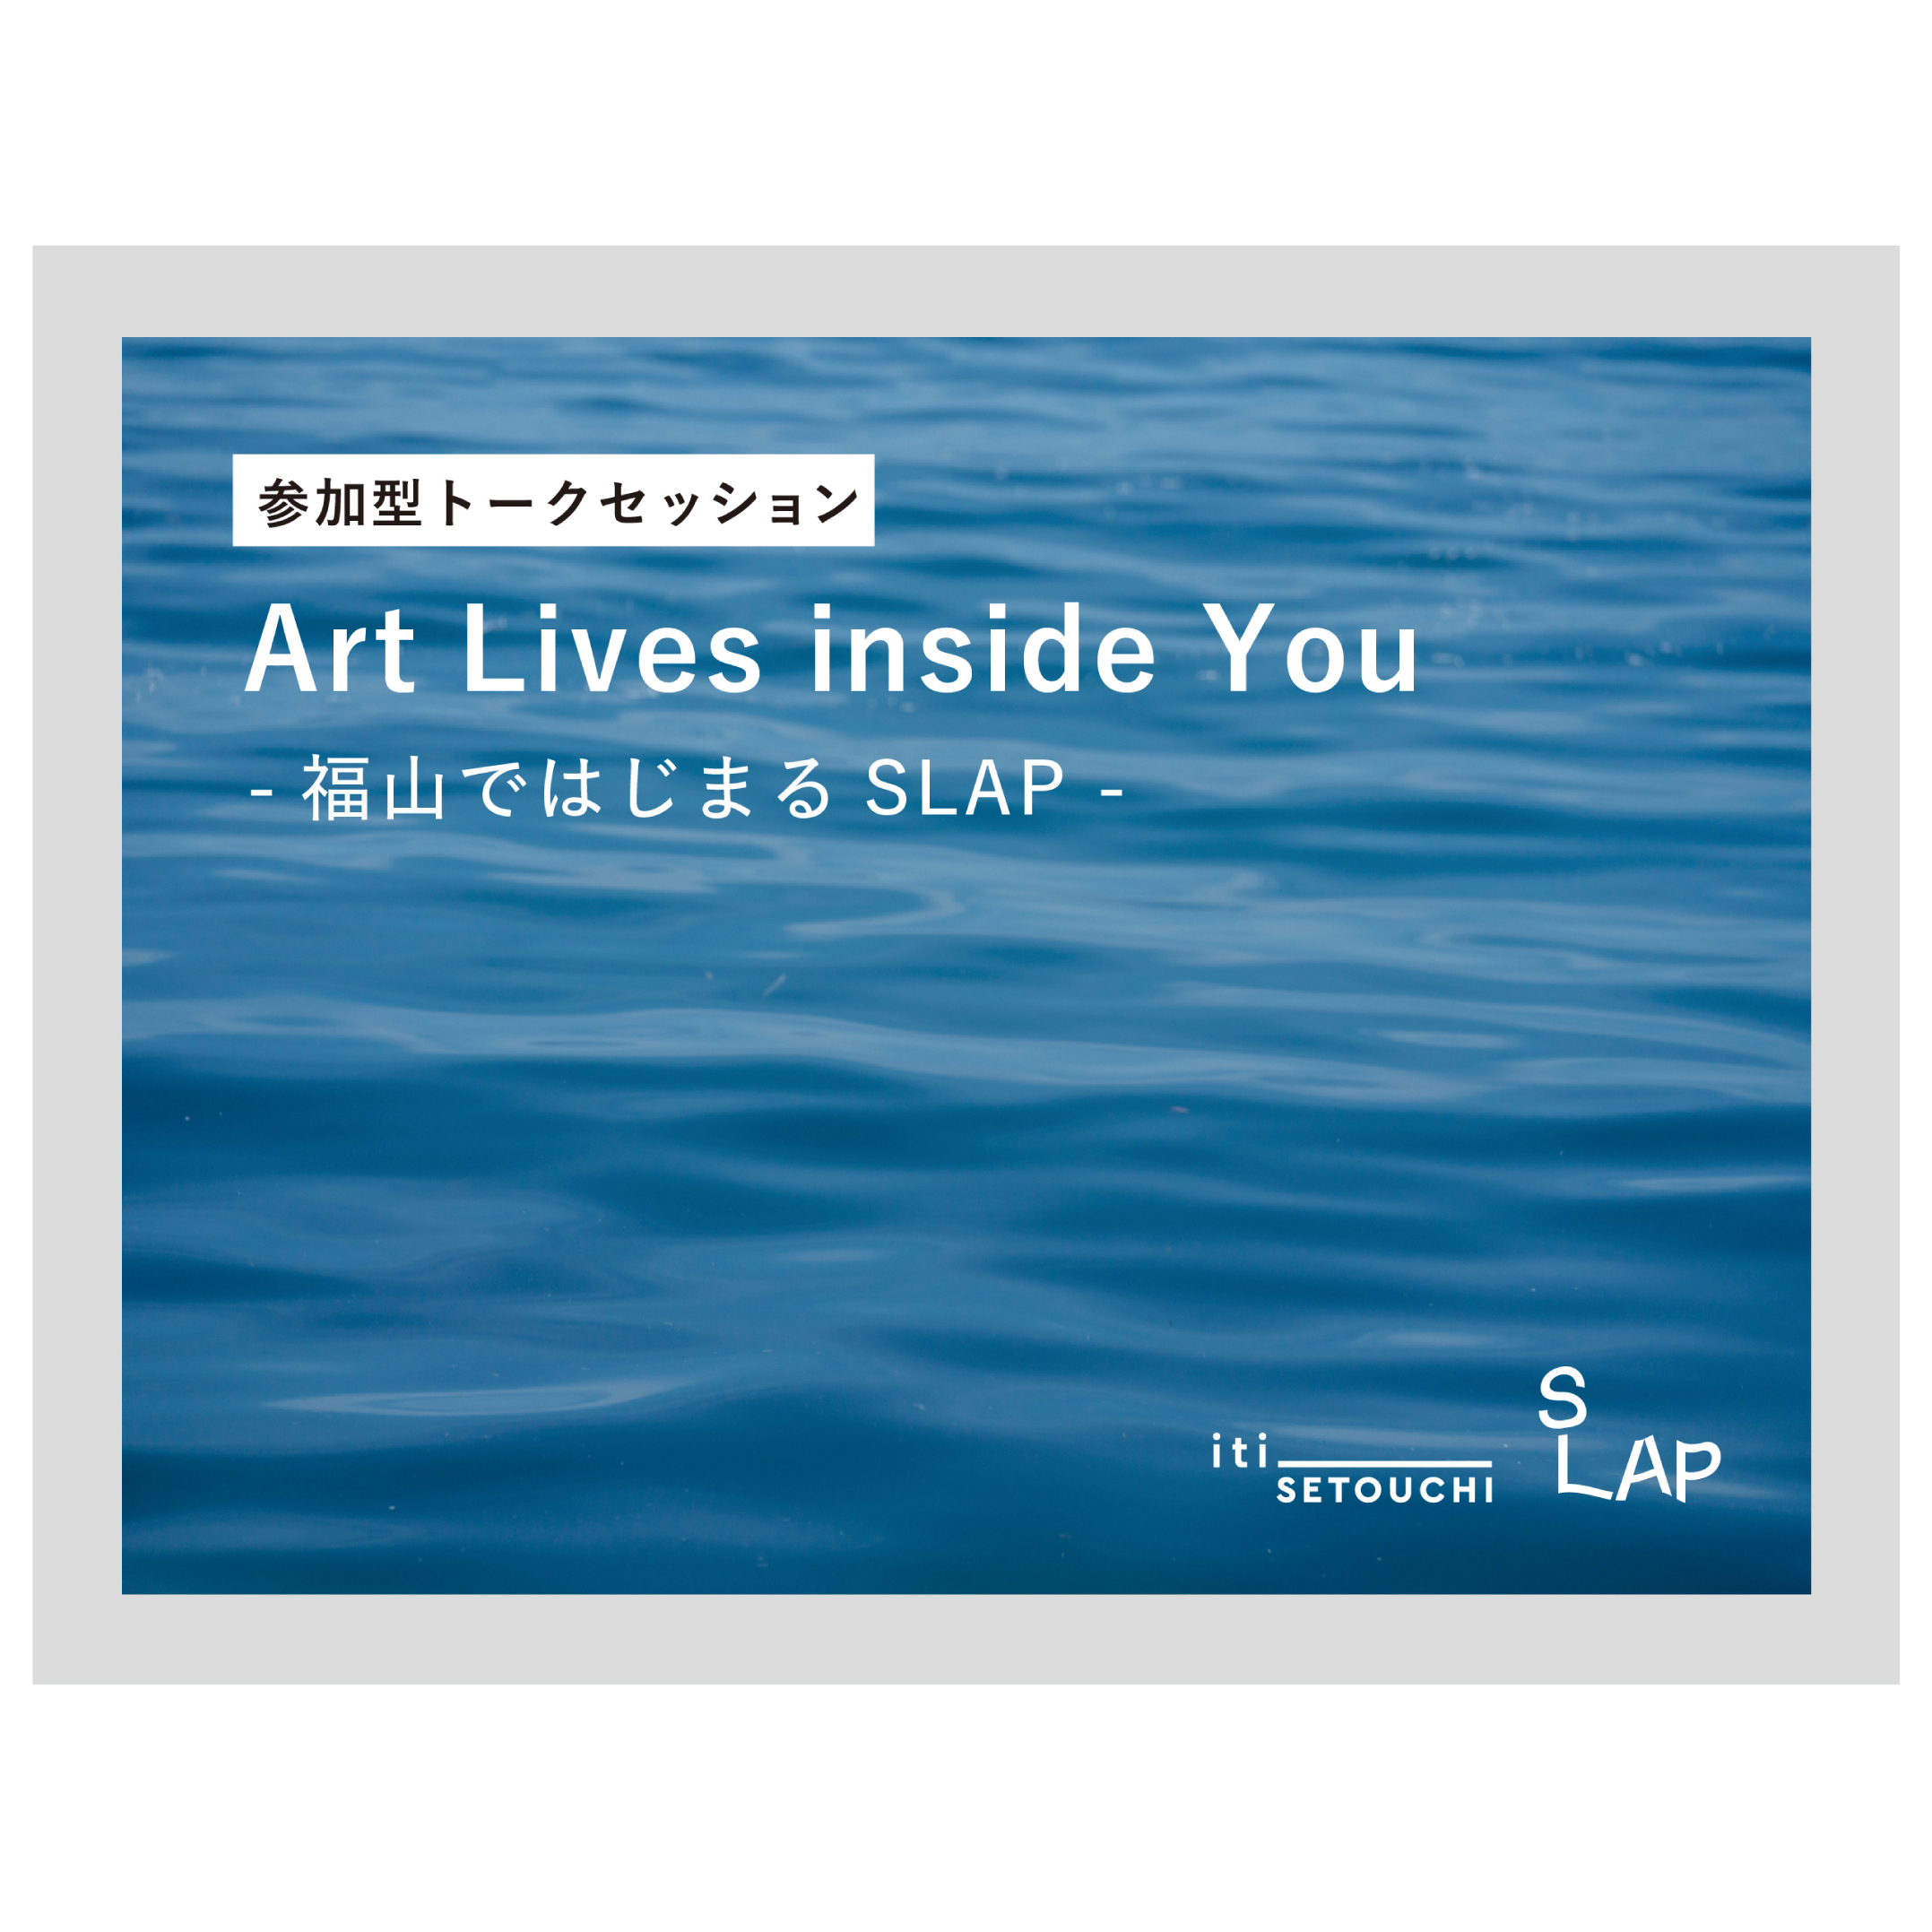 10/15(土)開催 シンポジウム 「Art Lives inside You ー福山ではじまるSLAPー」 